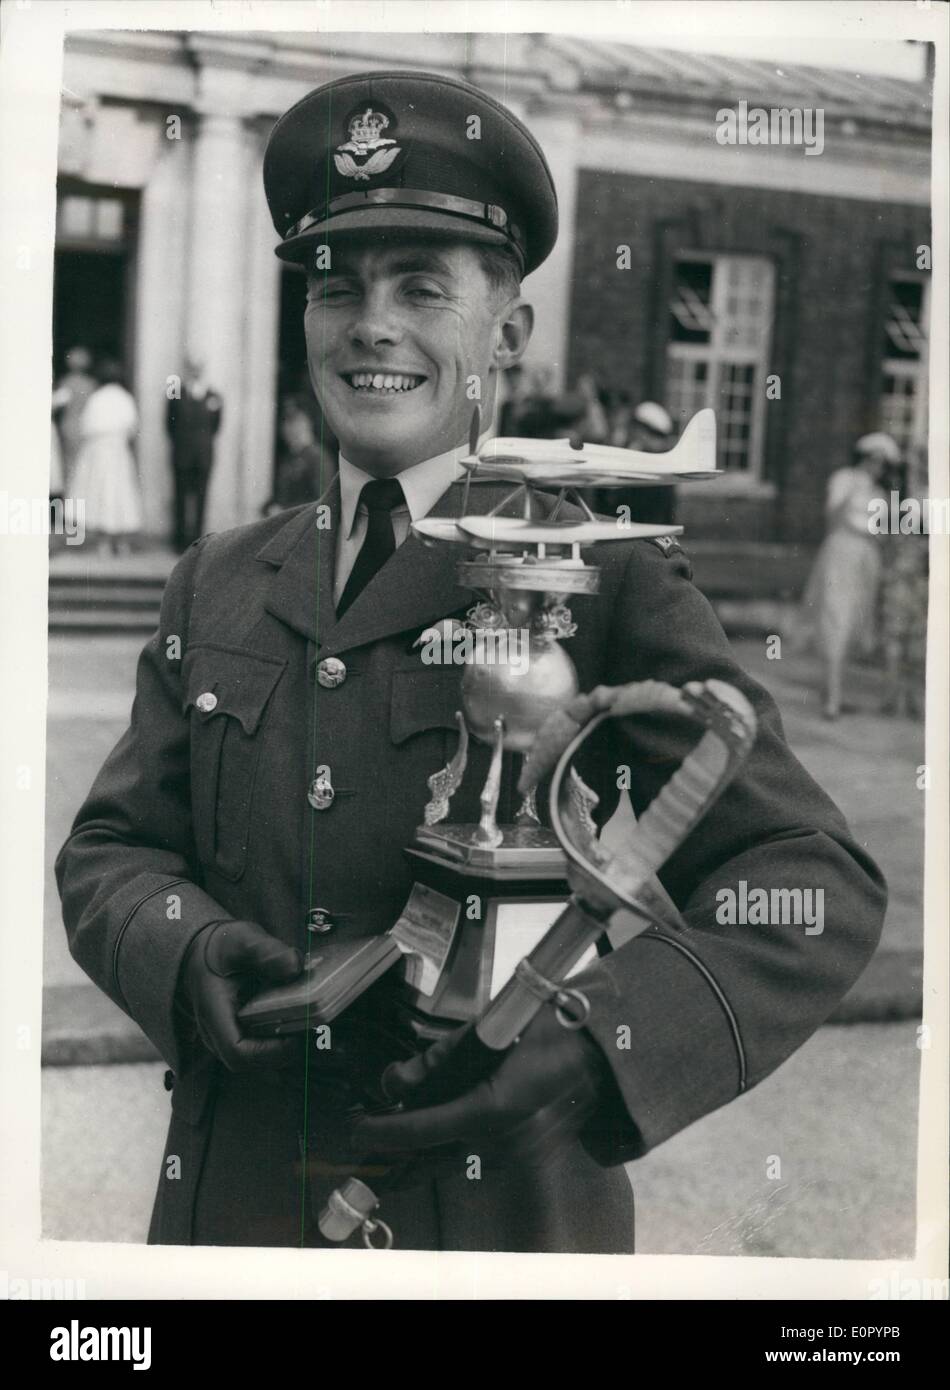 Lug. 07, 1957 - primo signore del mare assume omaggio a RAF che passano fuori Parade. Il miglior -tutti i round-CADET proviene dalla Nuova Zelanda. EARL MOUNTBATTEN di Birmania - l'ammiraglio della flotta - è stata la revisione ufficiale oggi a passare fuori Parade di n. 70 Entrata - Royal Air Force College di Cranwell. Keystone Mostra fotografica di:- sotto Senior Officer T.E. Enright di Dunedin, Nuova Zelanda - visibile dopo aver ricevuto la spada di onore, come il miglior all-round cadet; REGINA DELLA MEDAGLIA (per la cadet ottenere più alti contrassegni aggregato in tutti i soggetti ) - e la R.M. Foto Stock